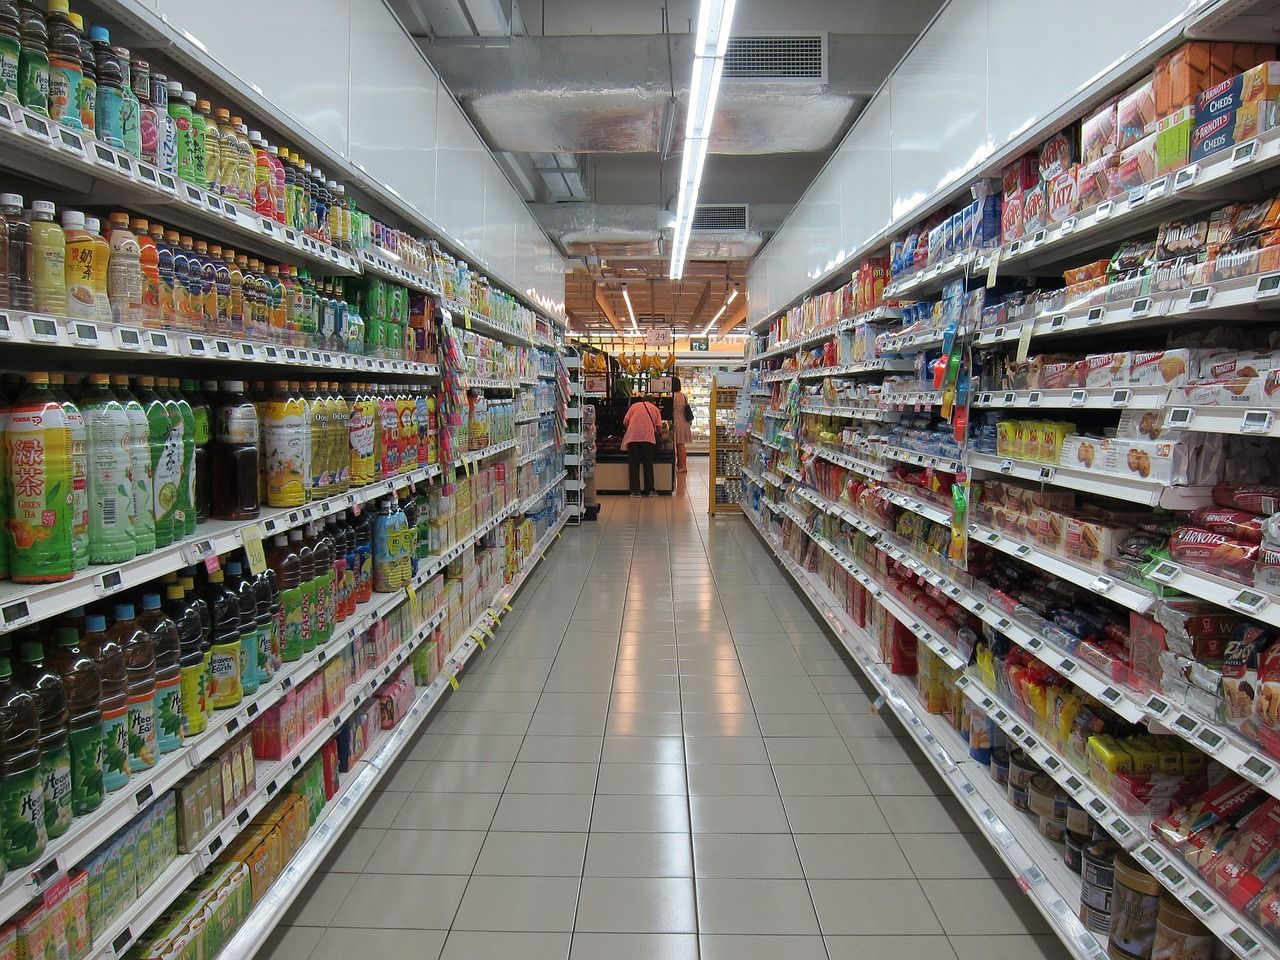 Кому газ за зниженою ціною: Мінагрополітики затвердило список виробників соціальних продуктів - Украина новости - Агро